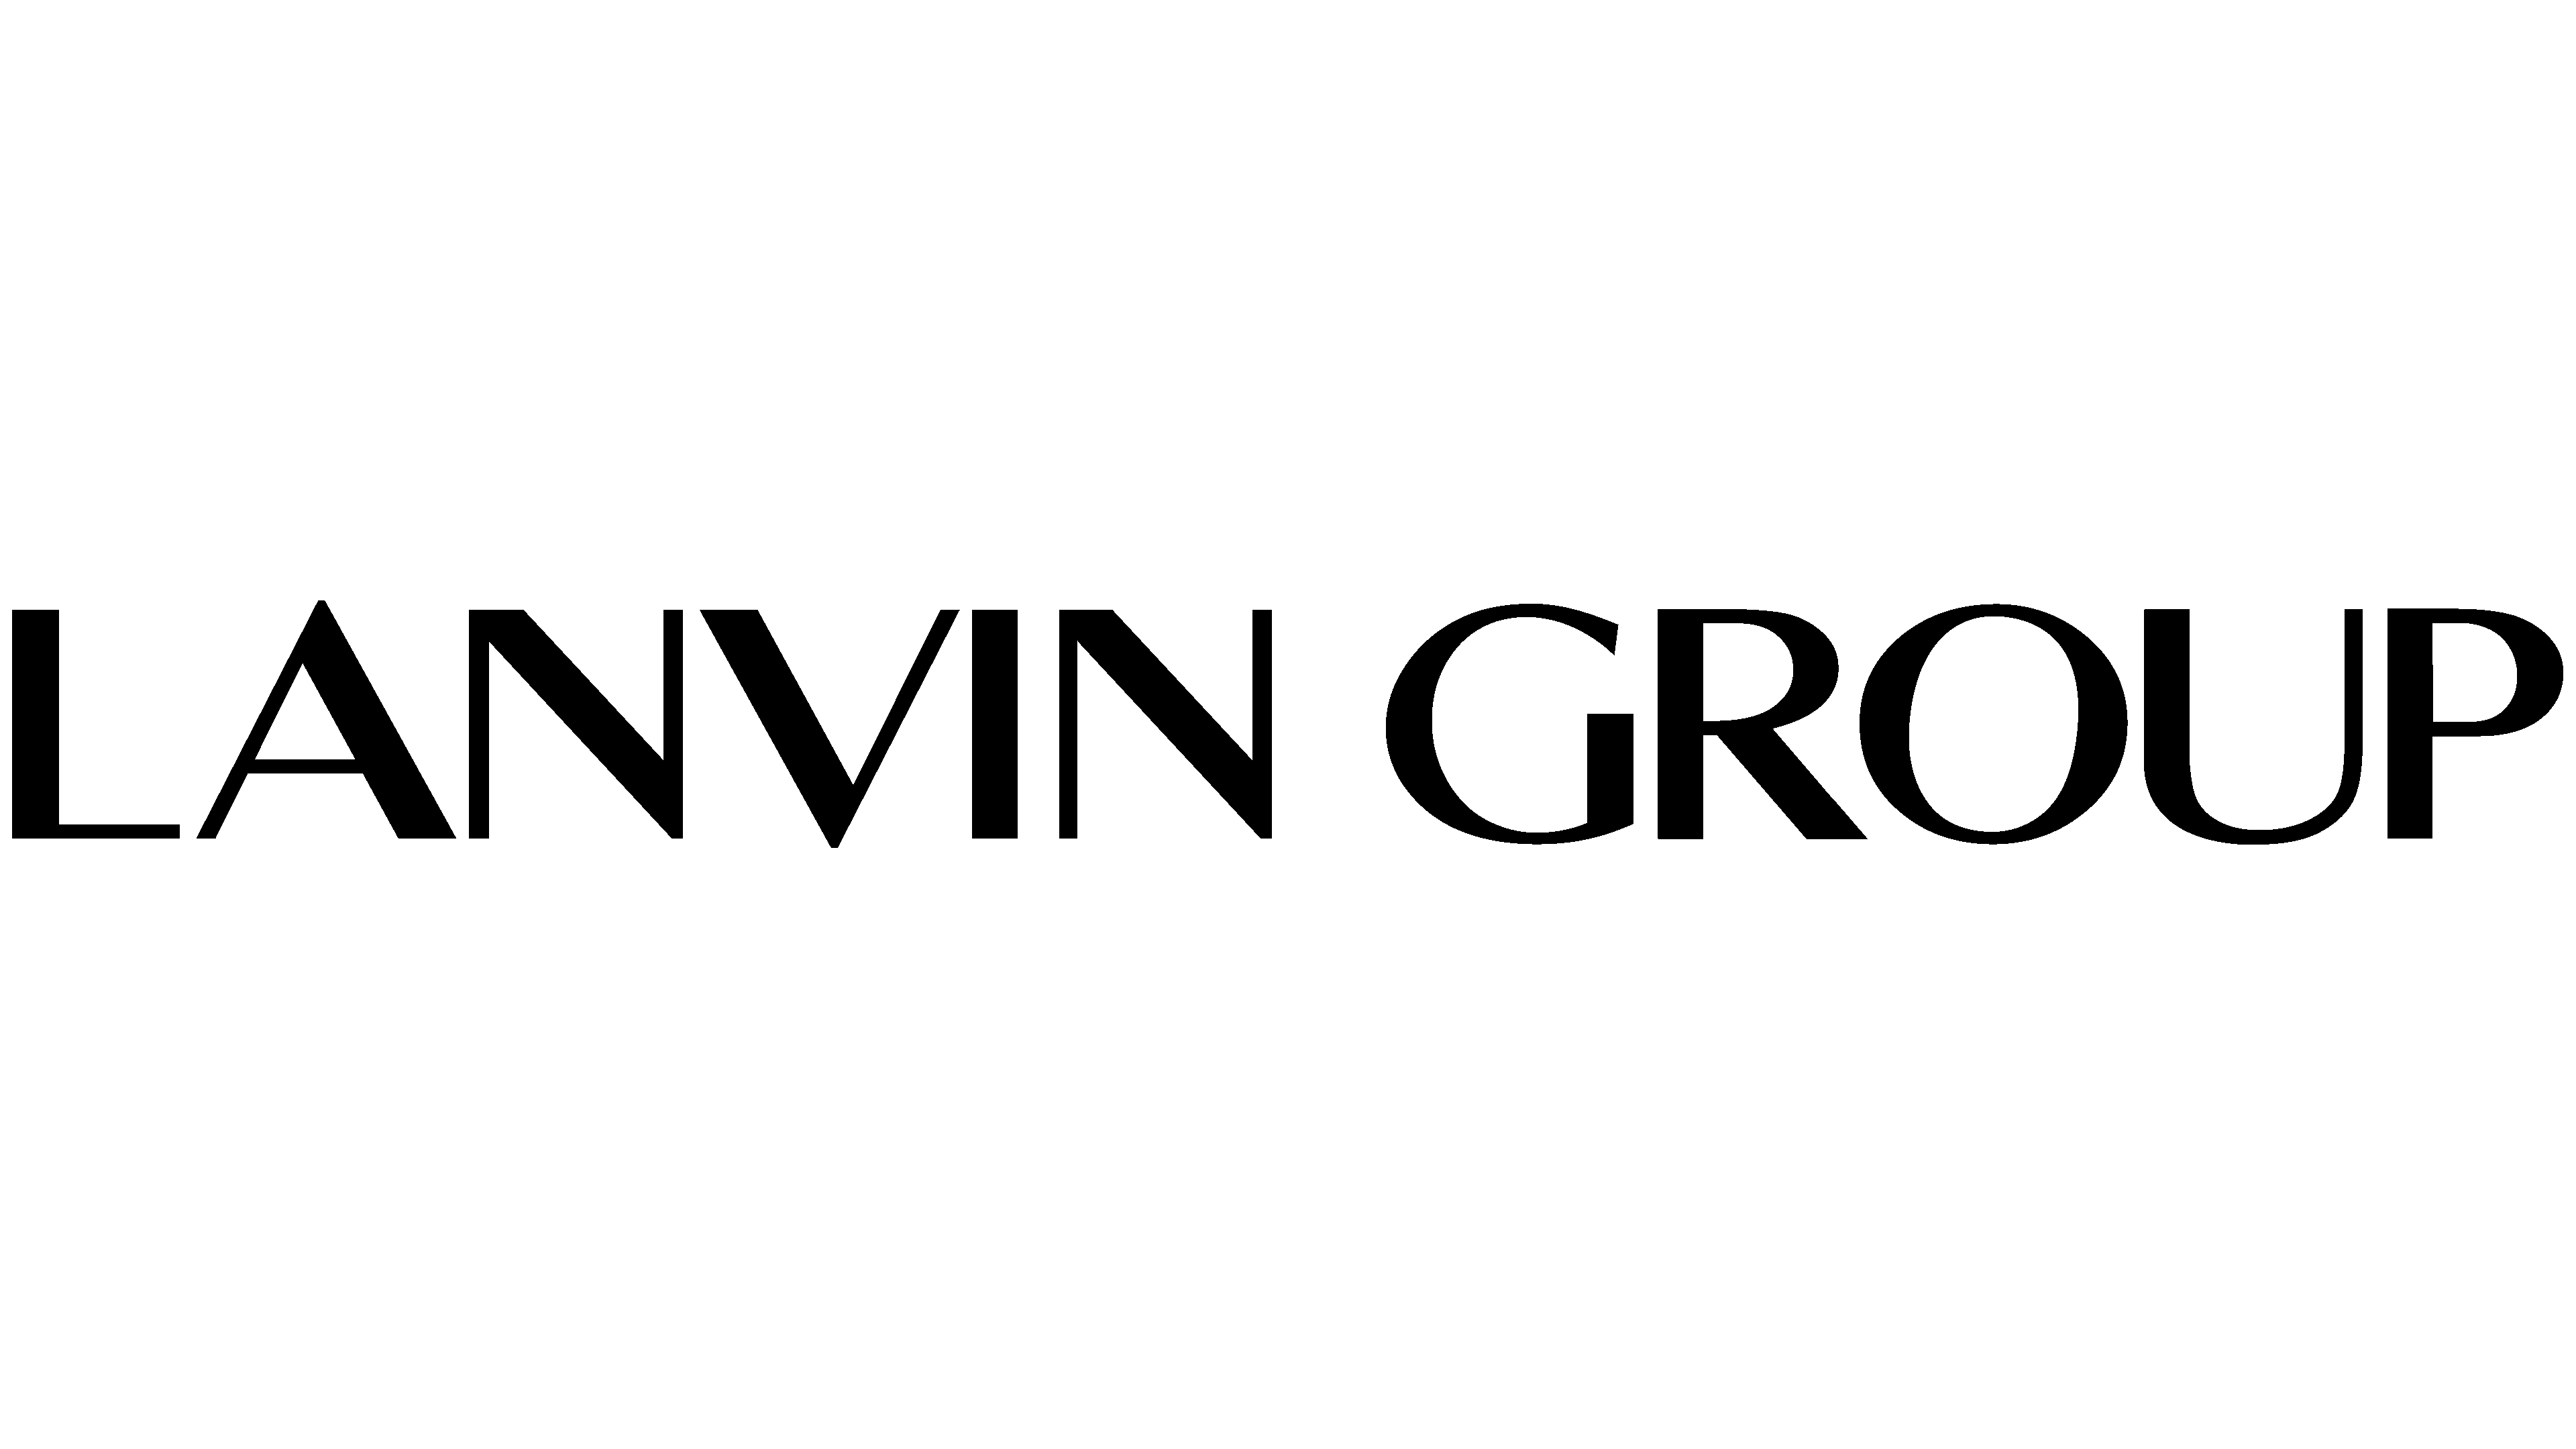 Lanvin Group